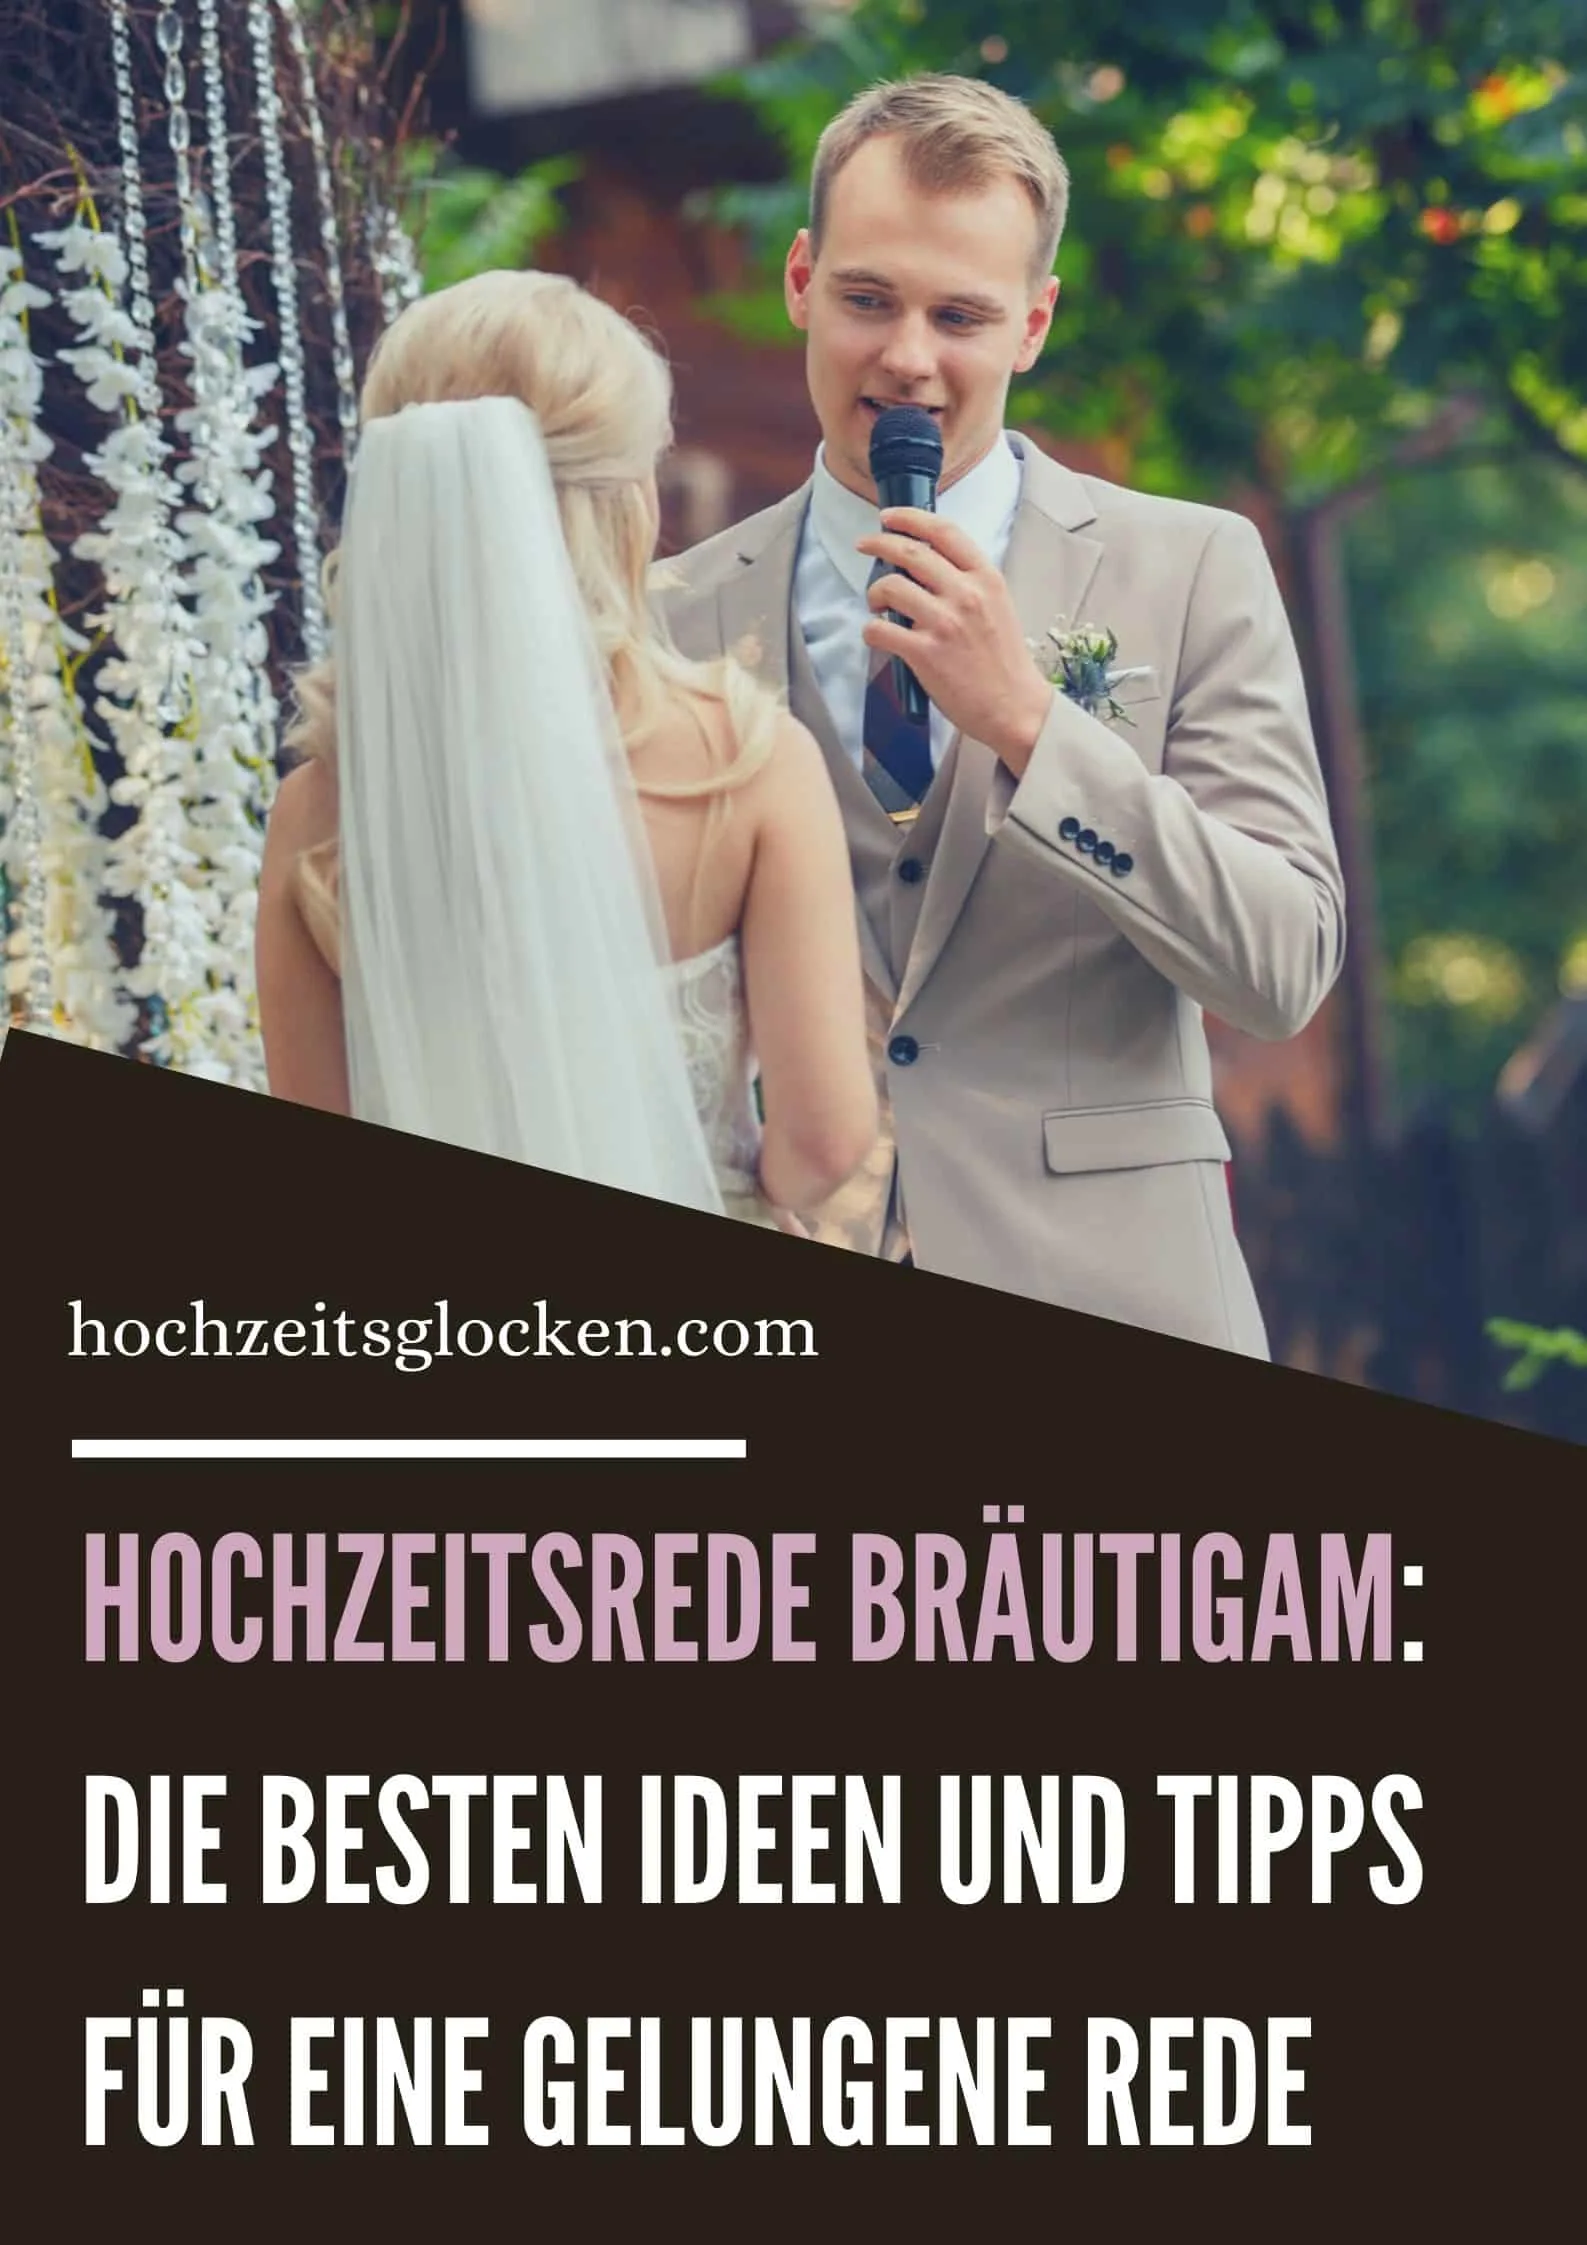 Hochzeitsrede Bräutigam: Die Besten Ideen Und Tipps Für Eine Gelungene Rede